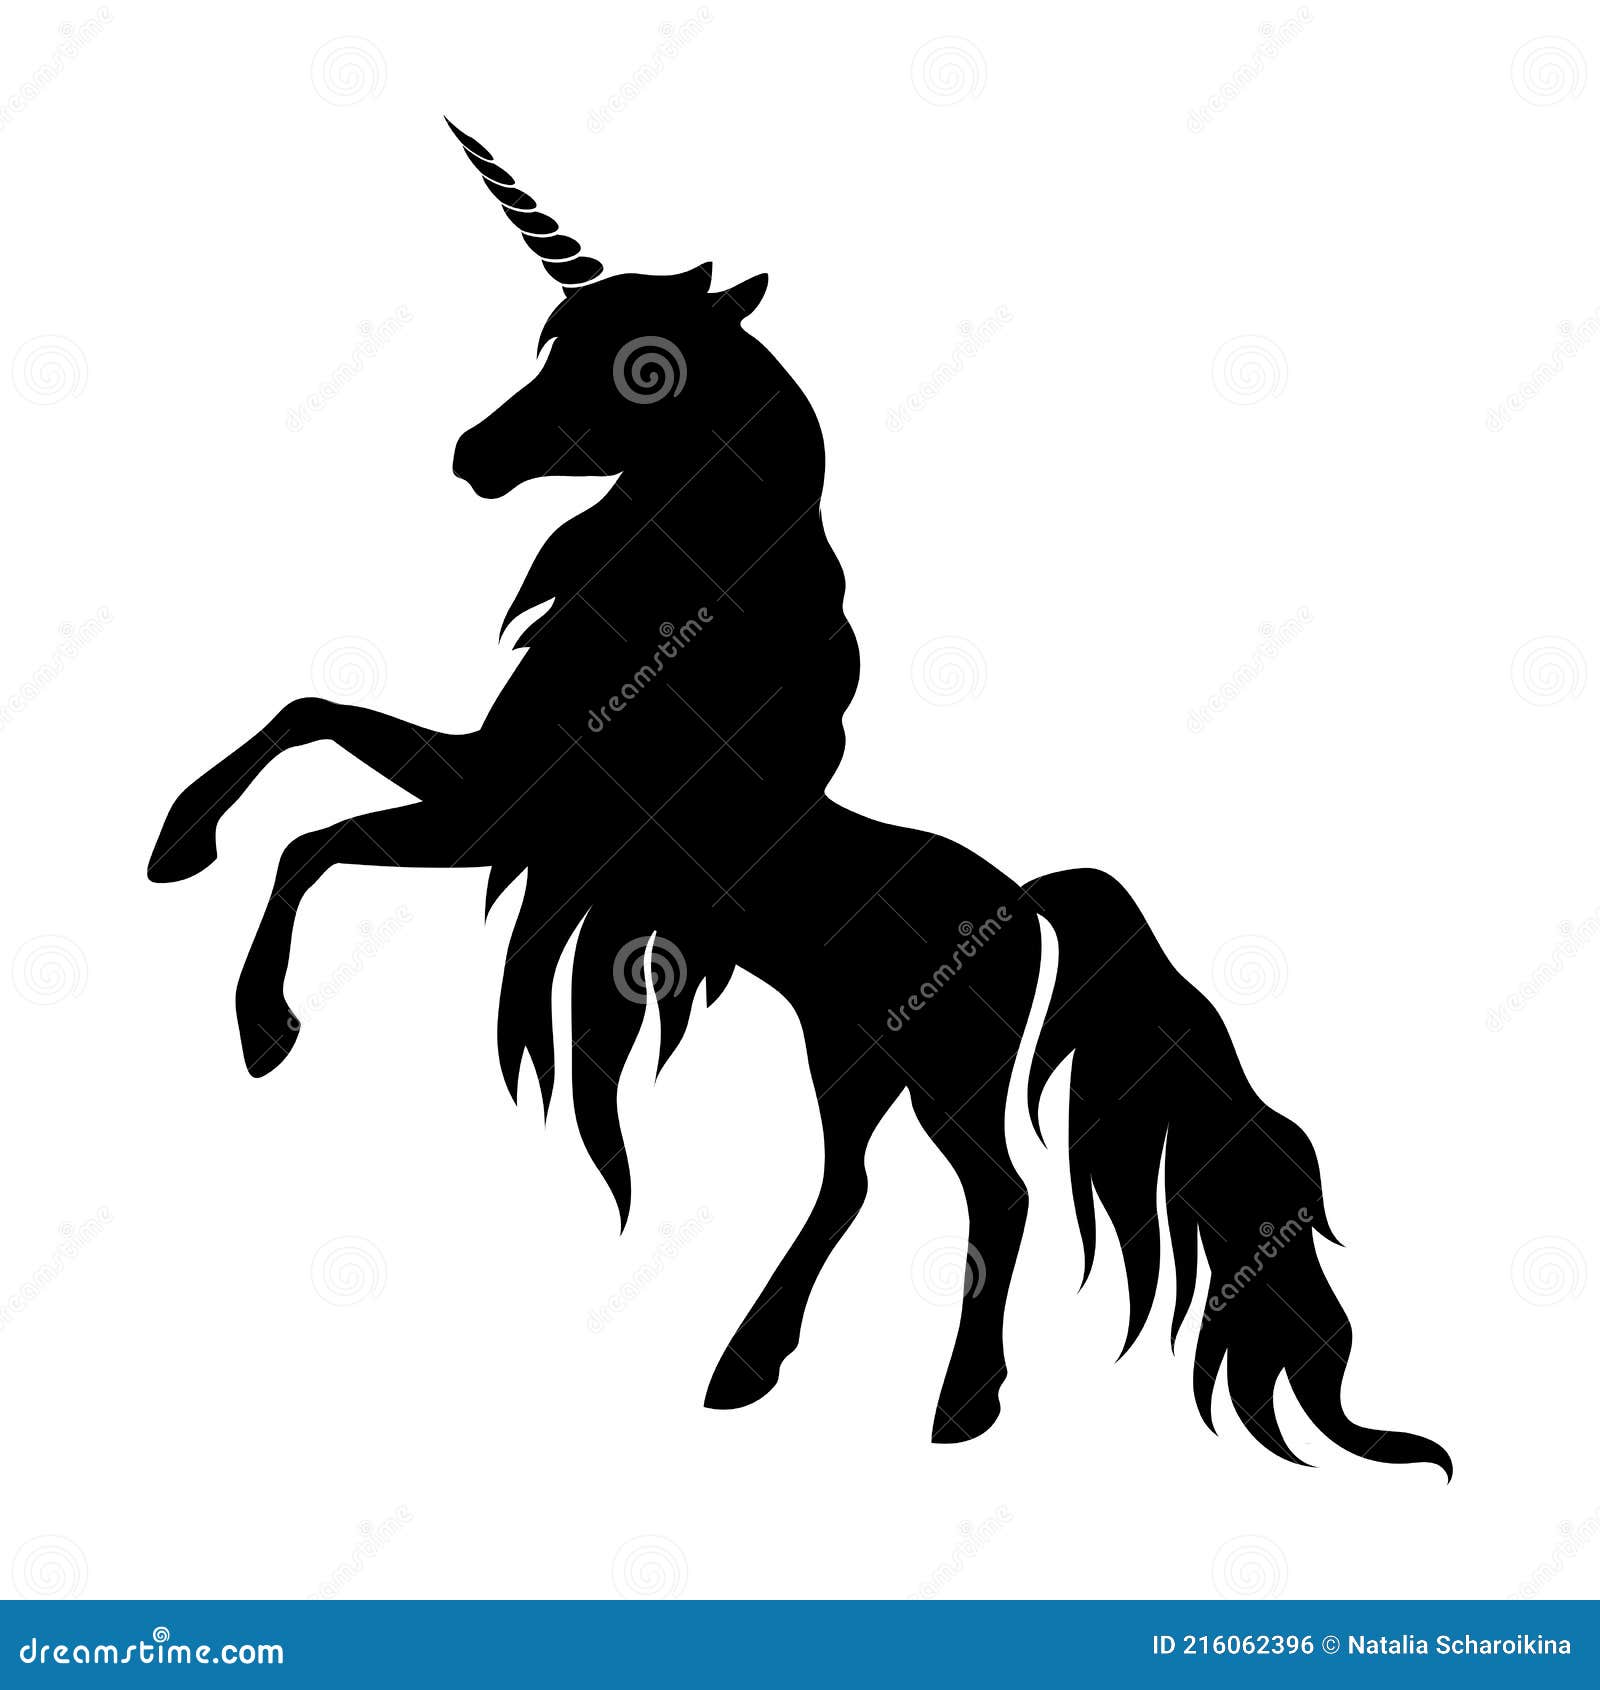 Với hình đại diện của chiếc Unicorn được phân tách trên nền đen, bạn sẽ tìm thấy một tác phẩm đầy vẻ đẹp lộng lẫy và tinh tế. Chi tiết tỉ mỉ và sự tinh tế trong việc làm nên bóng đen sẽ khiến bạn cảm thấy thích thú.